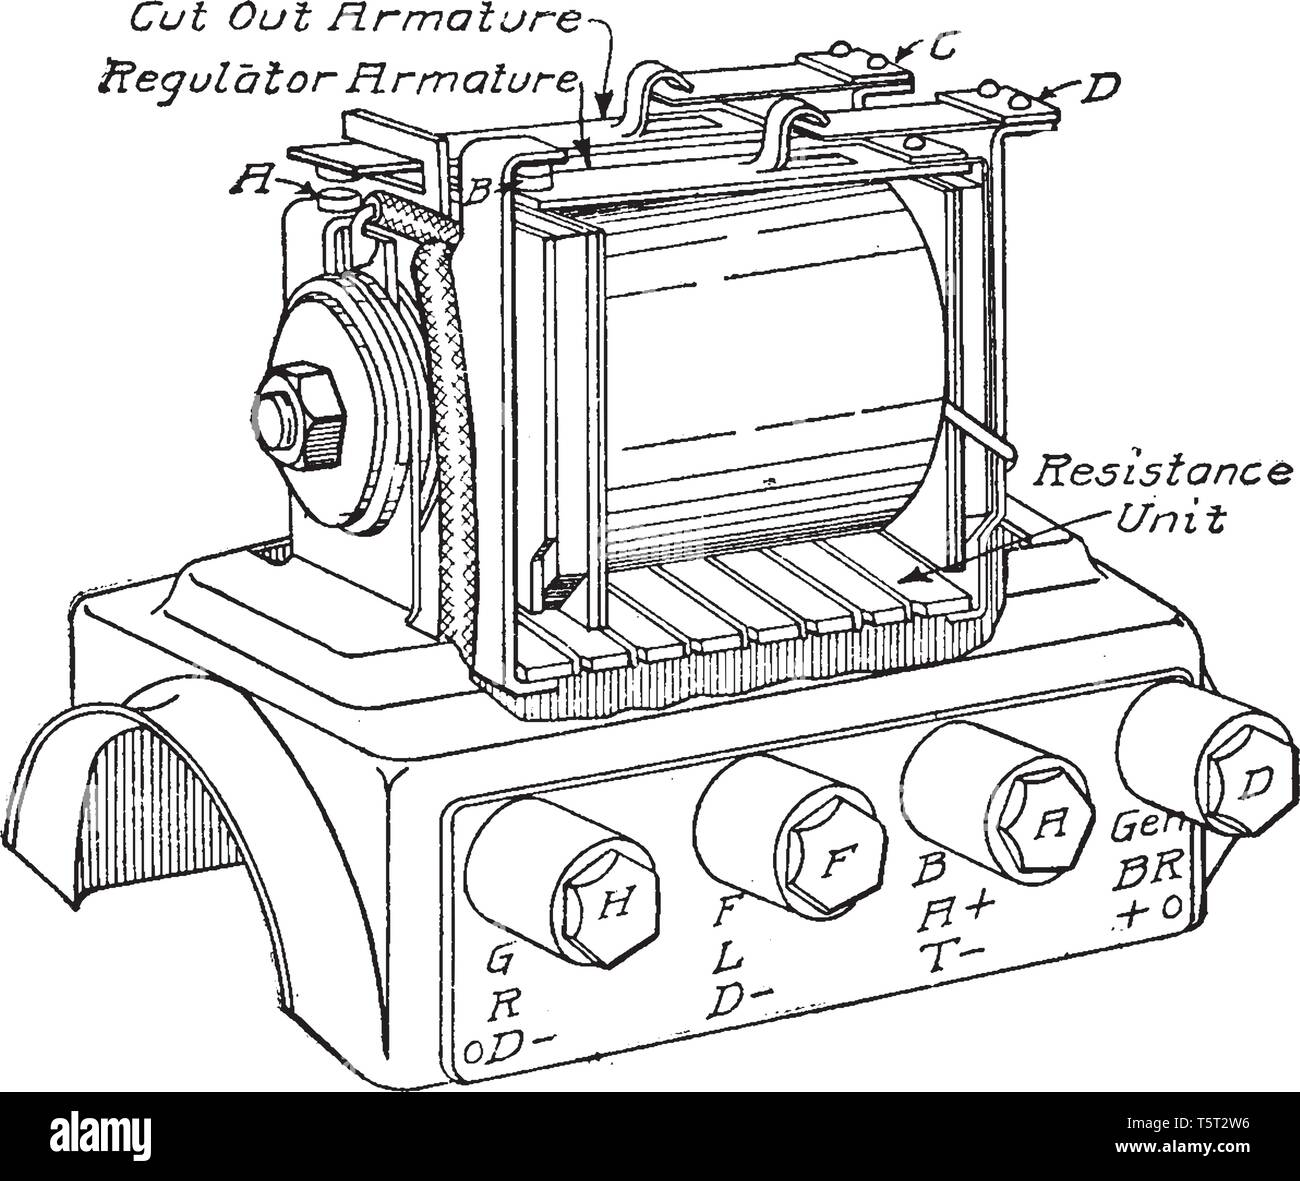 Régulateur est heinze Springfield et régulateur de courant, coupure de la batterie vintage dessin ou gravure illustration. Illustration de Vecteur